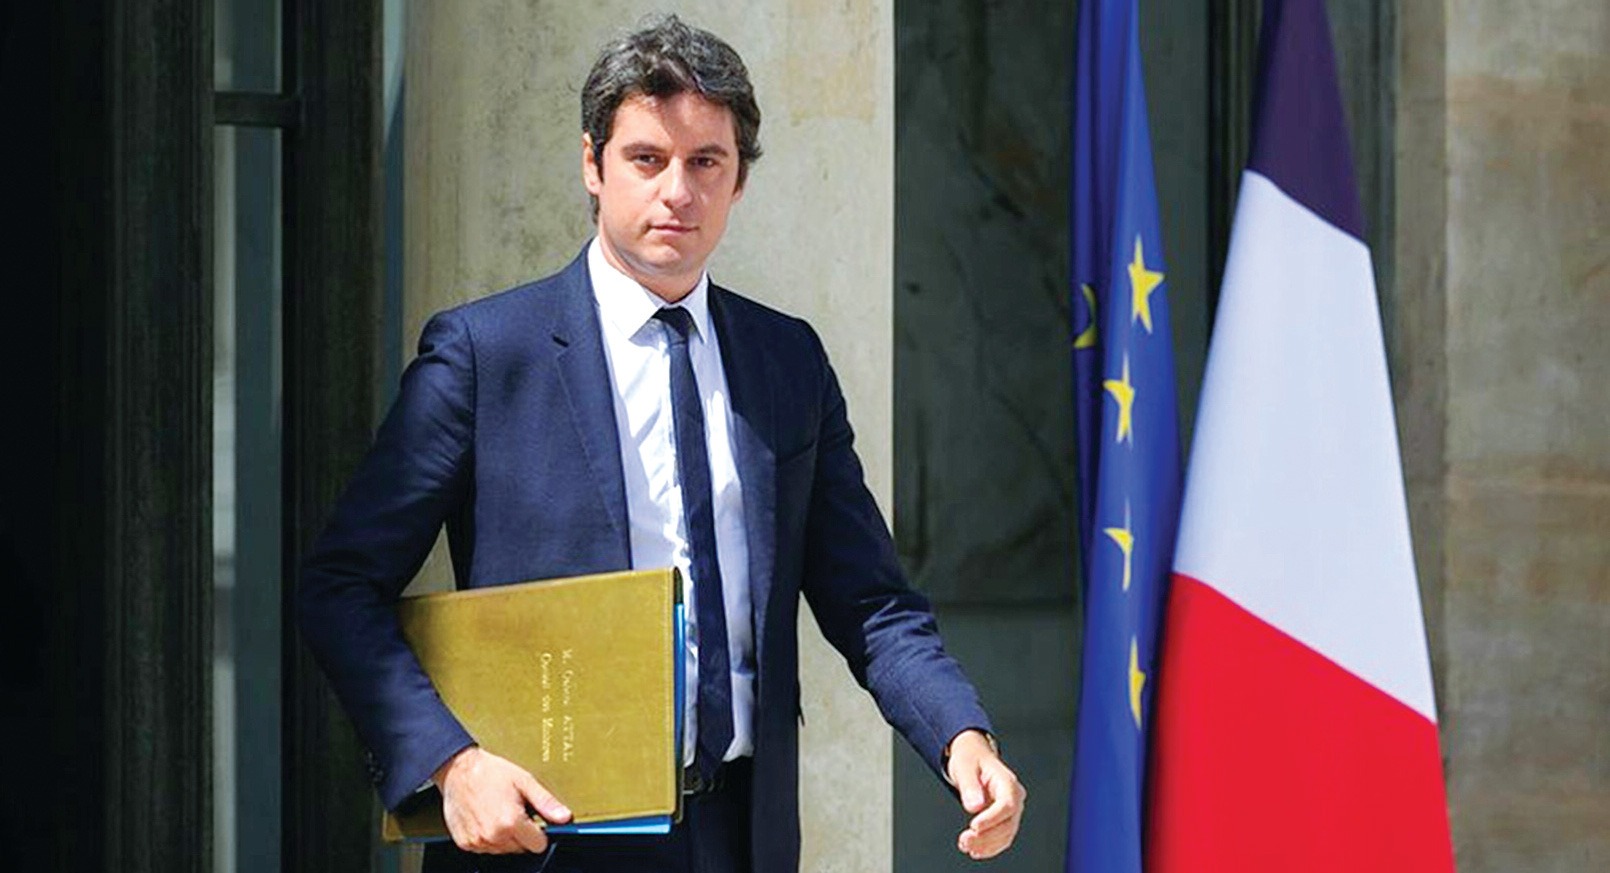 Hình ảnh báo chí 24h: Vẻ lãng tử, lịch lãm của tân Thủ tướng Pháp ở tuổi 34- Ảnh 2.